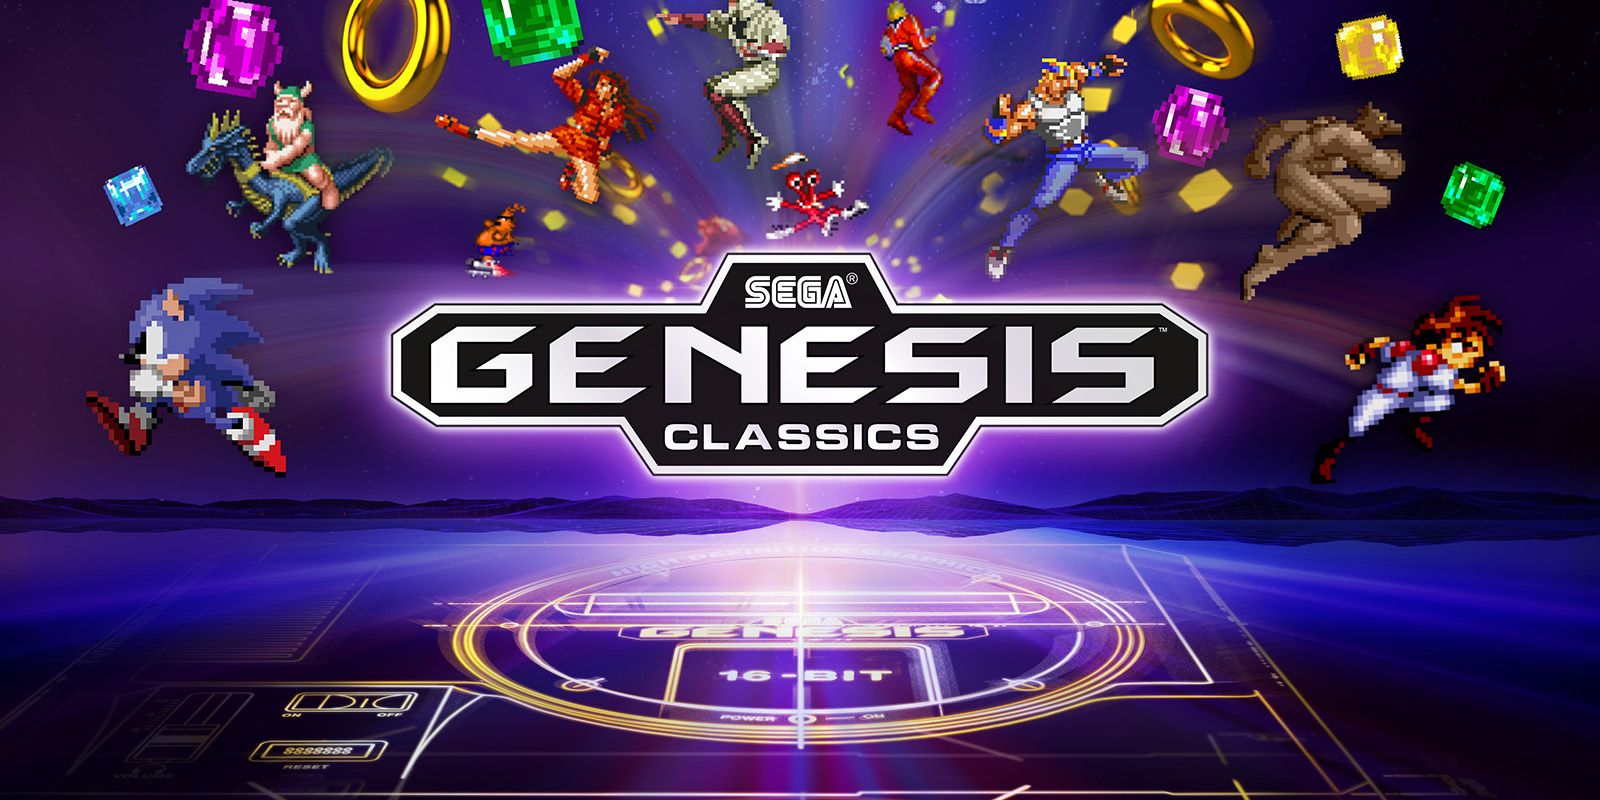 sega genesis classics download free